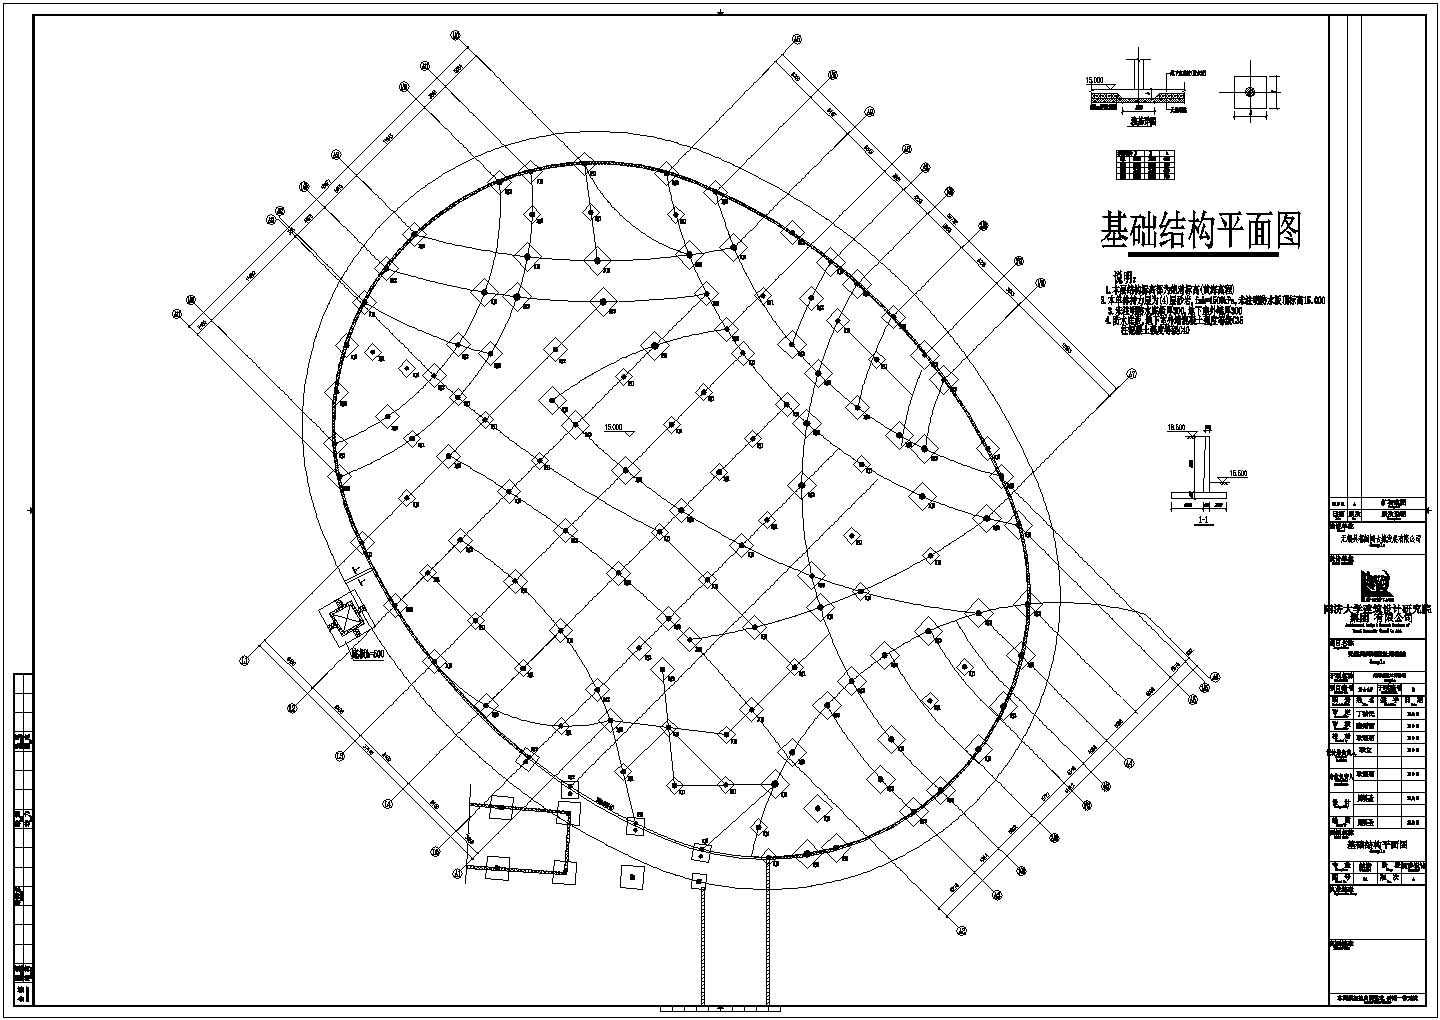 【江苏】无锡阖闾城遗址博物馆结构初步设计图